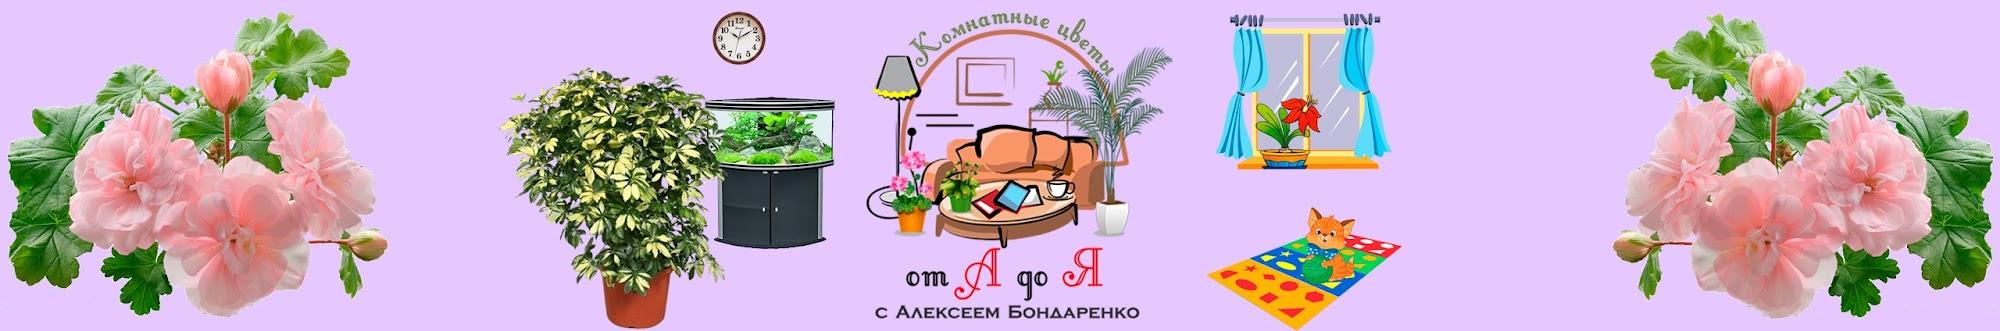 Комнатные цветы от А до Я с Алексеем Бондаренко